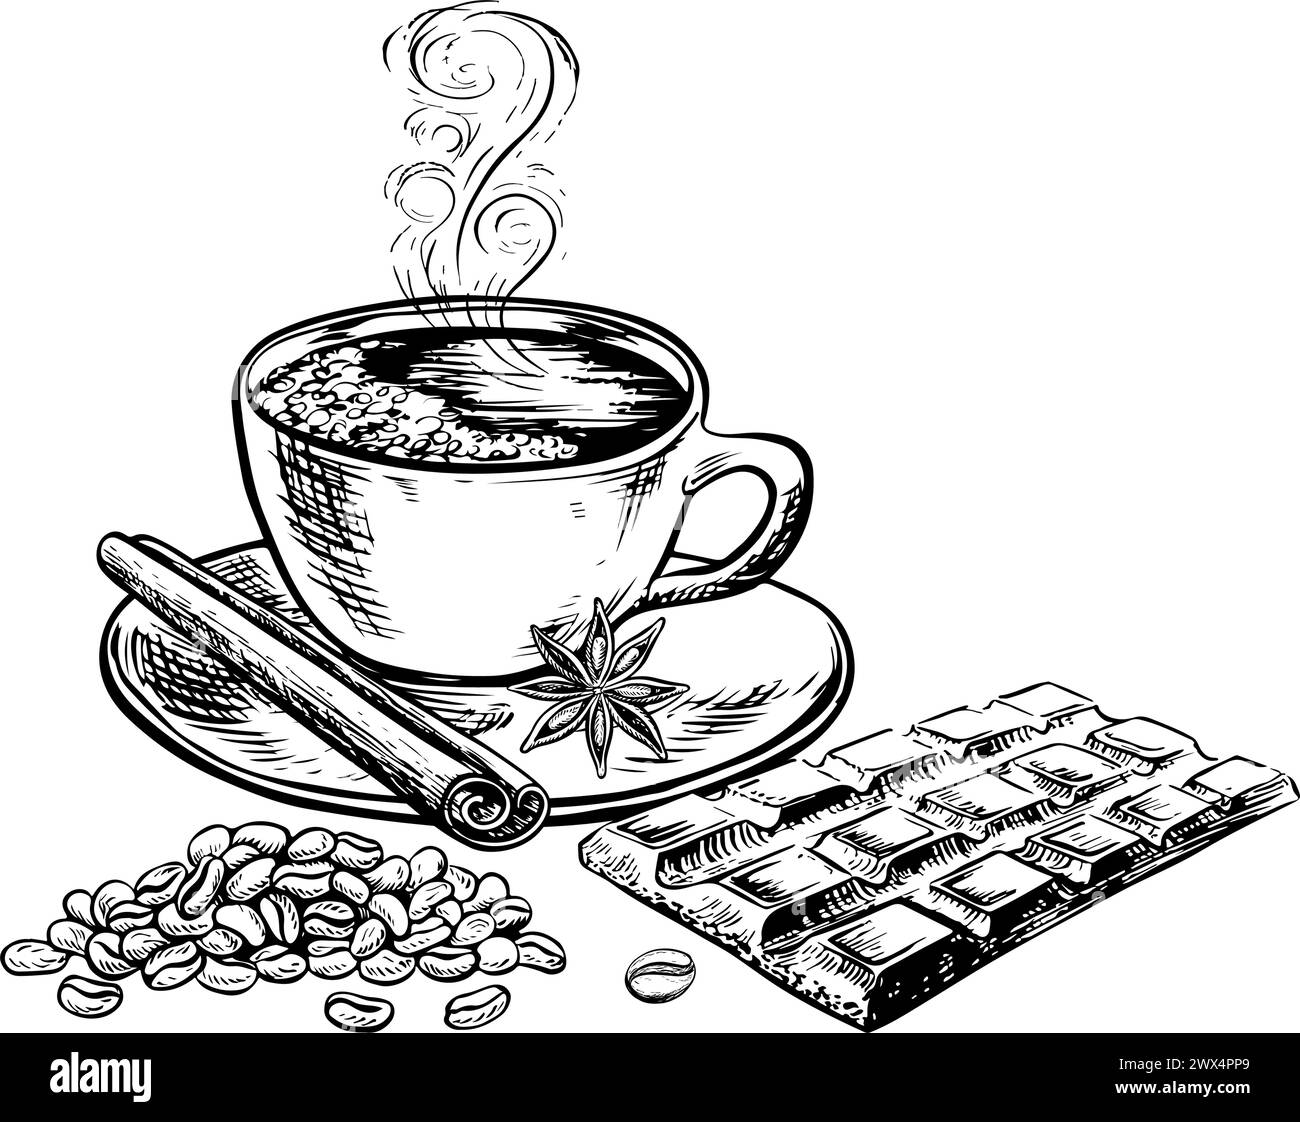 Une tasse de café avec une barre de chocolat à la cannelle et une étoile anis. L'illustration vectorielle en noir et blanc est dessinée à la main sur un fond blanc. Pour Illustration de Vecteur